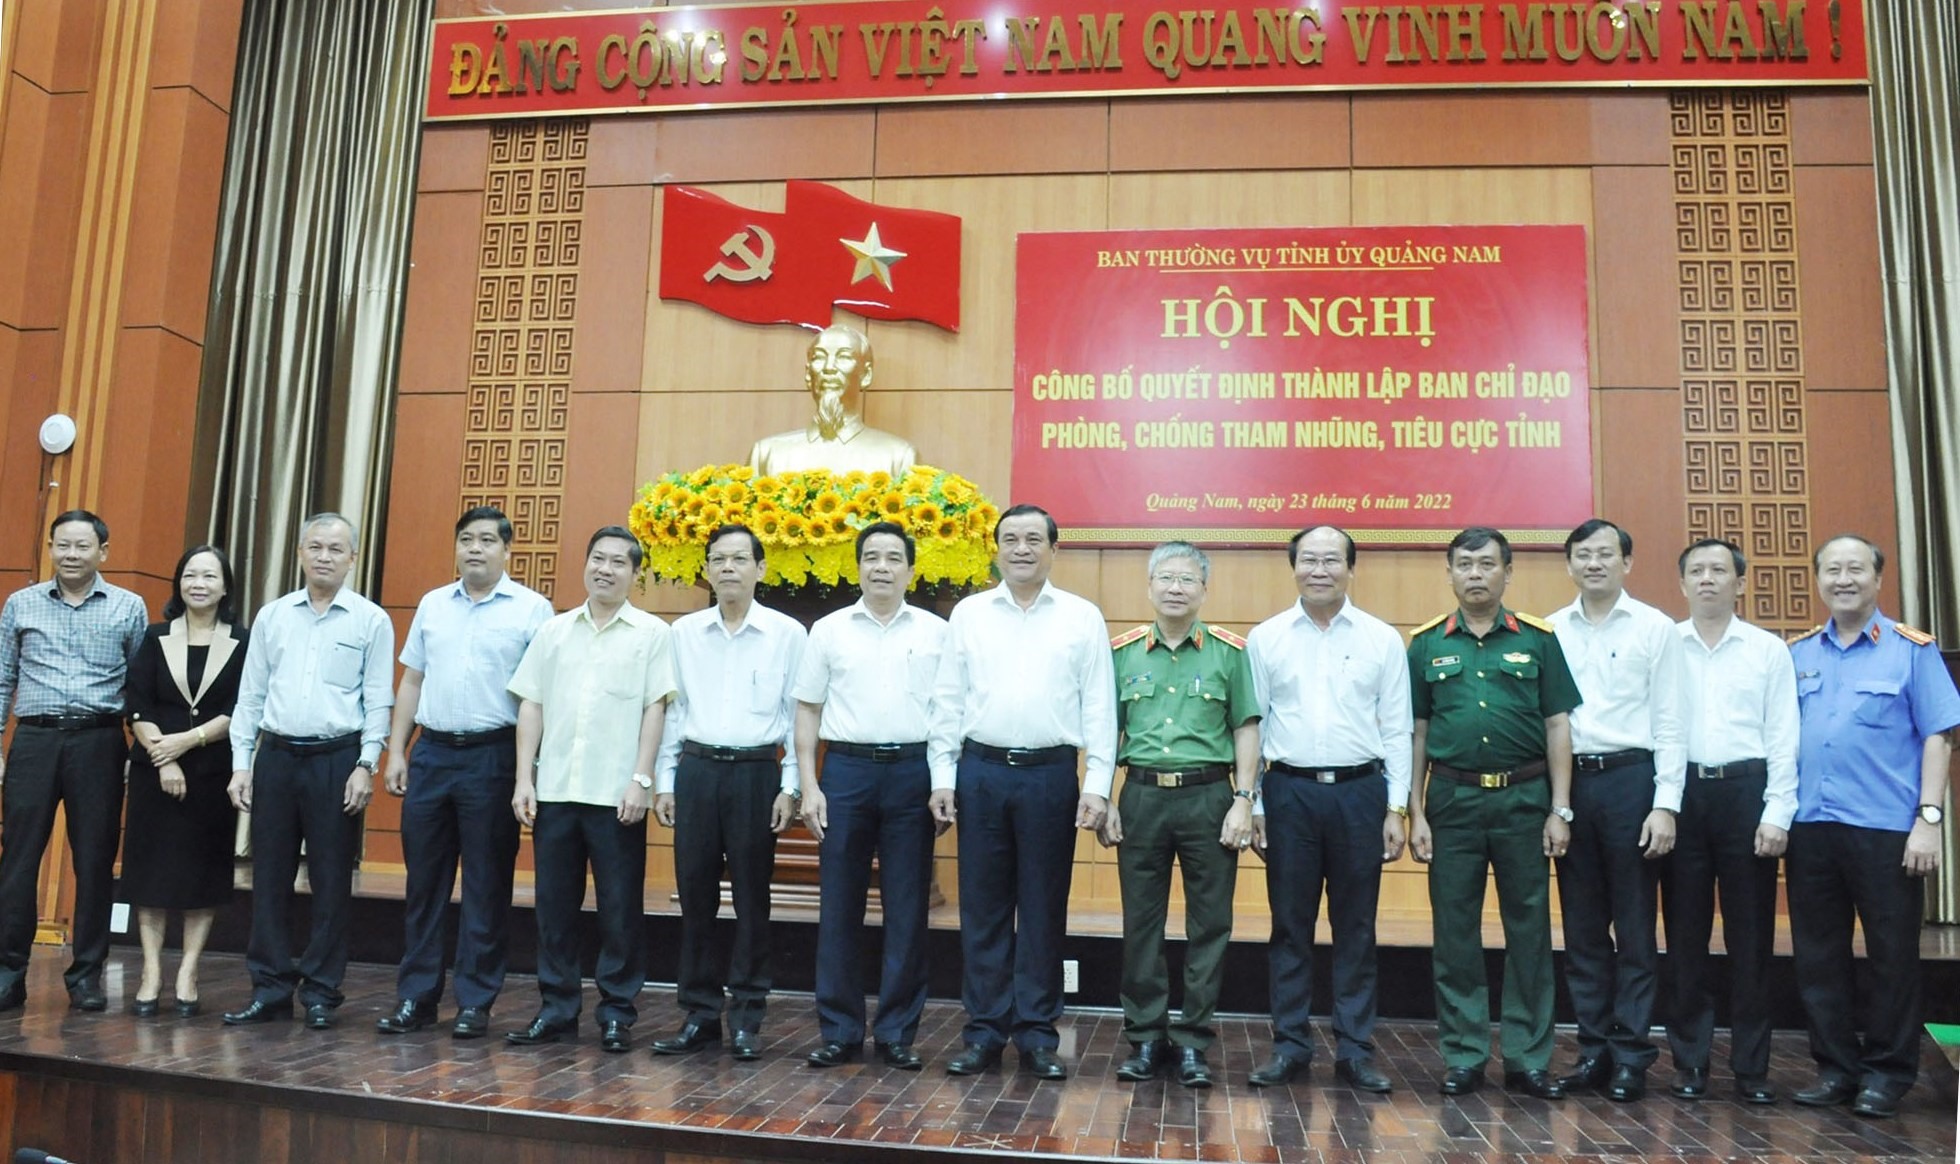 Quảng Nam thành lập Ban Chỉ đạo phòng chống tham nhũng, tiêu cực - Ảnh 1.